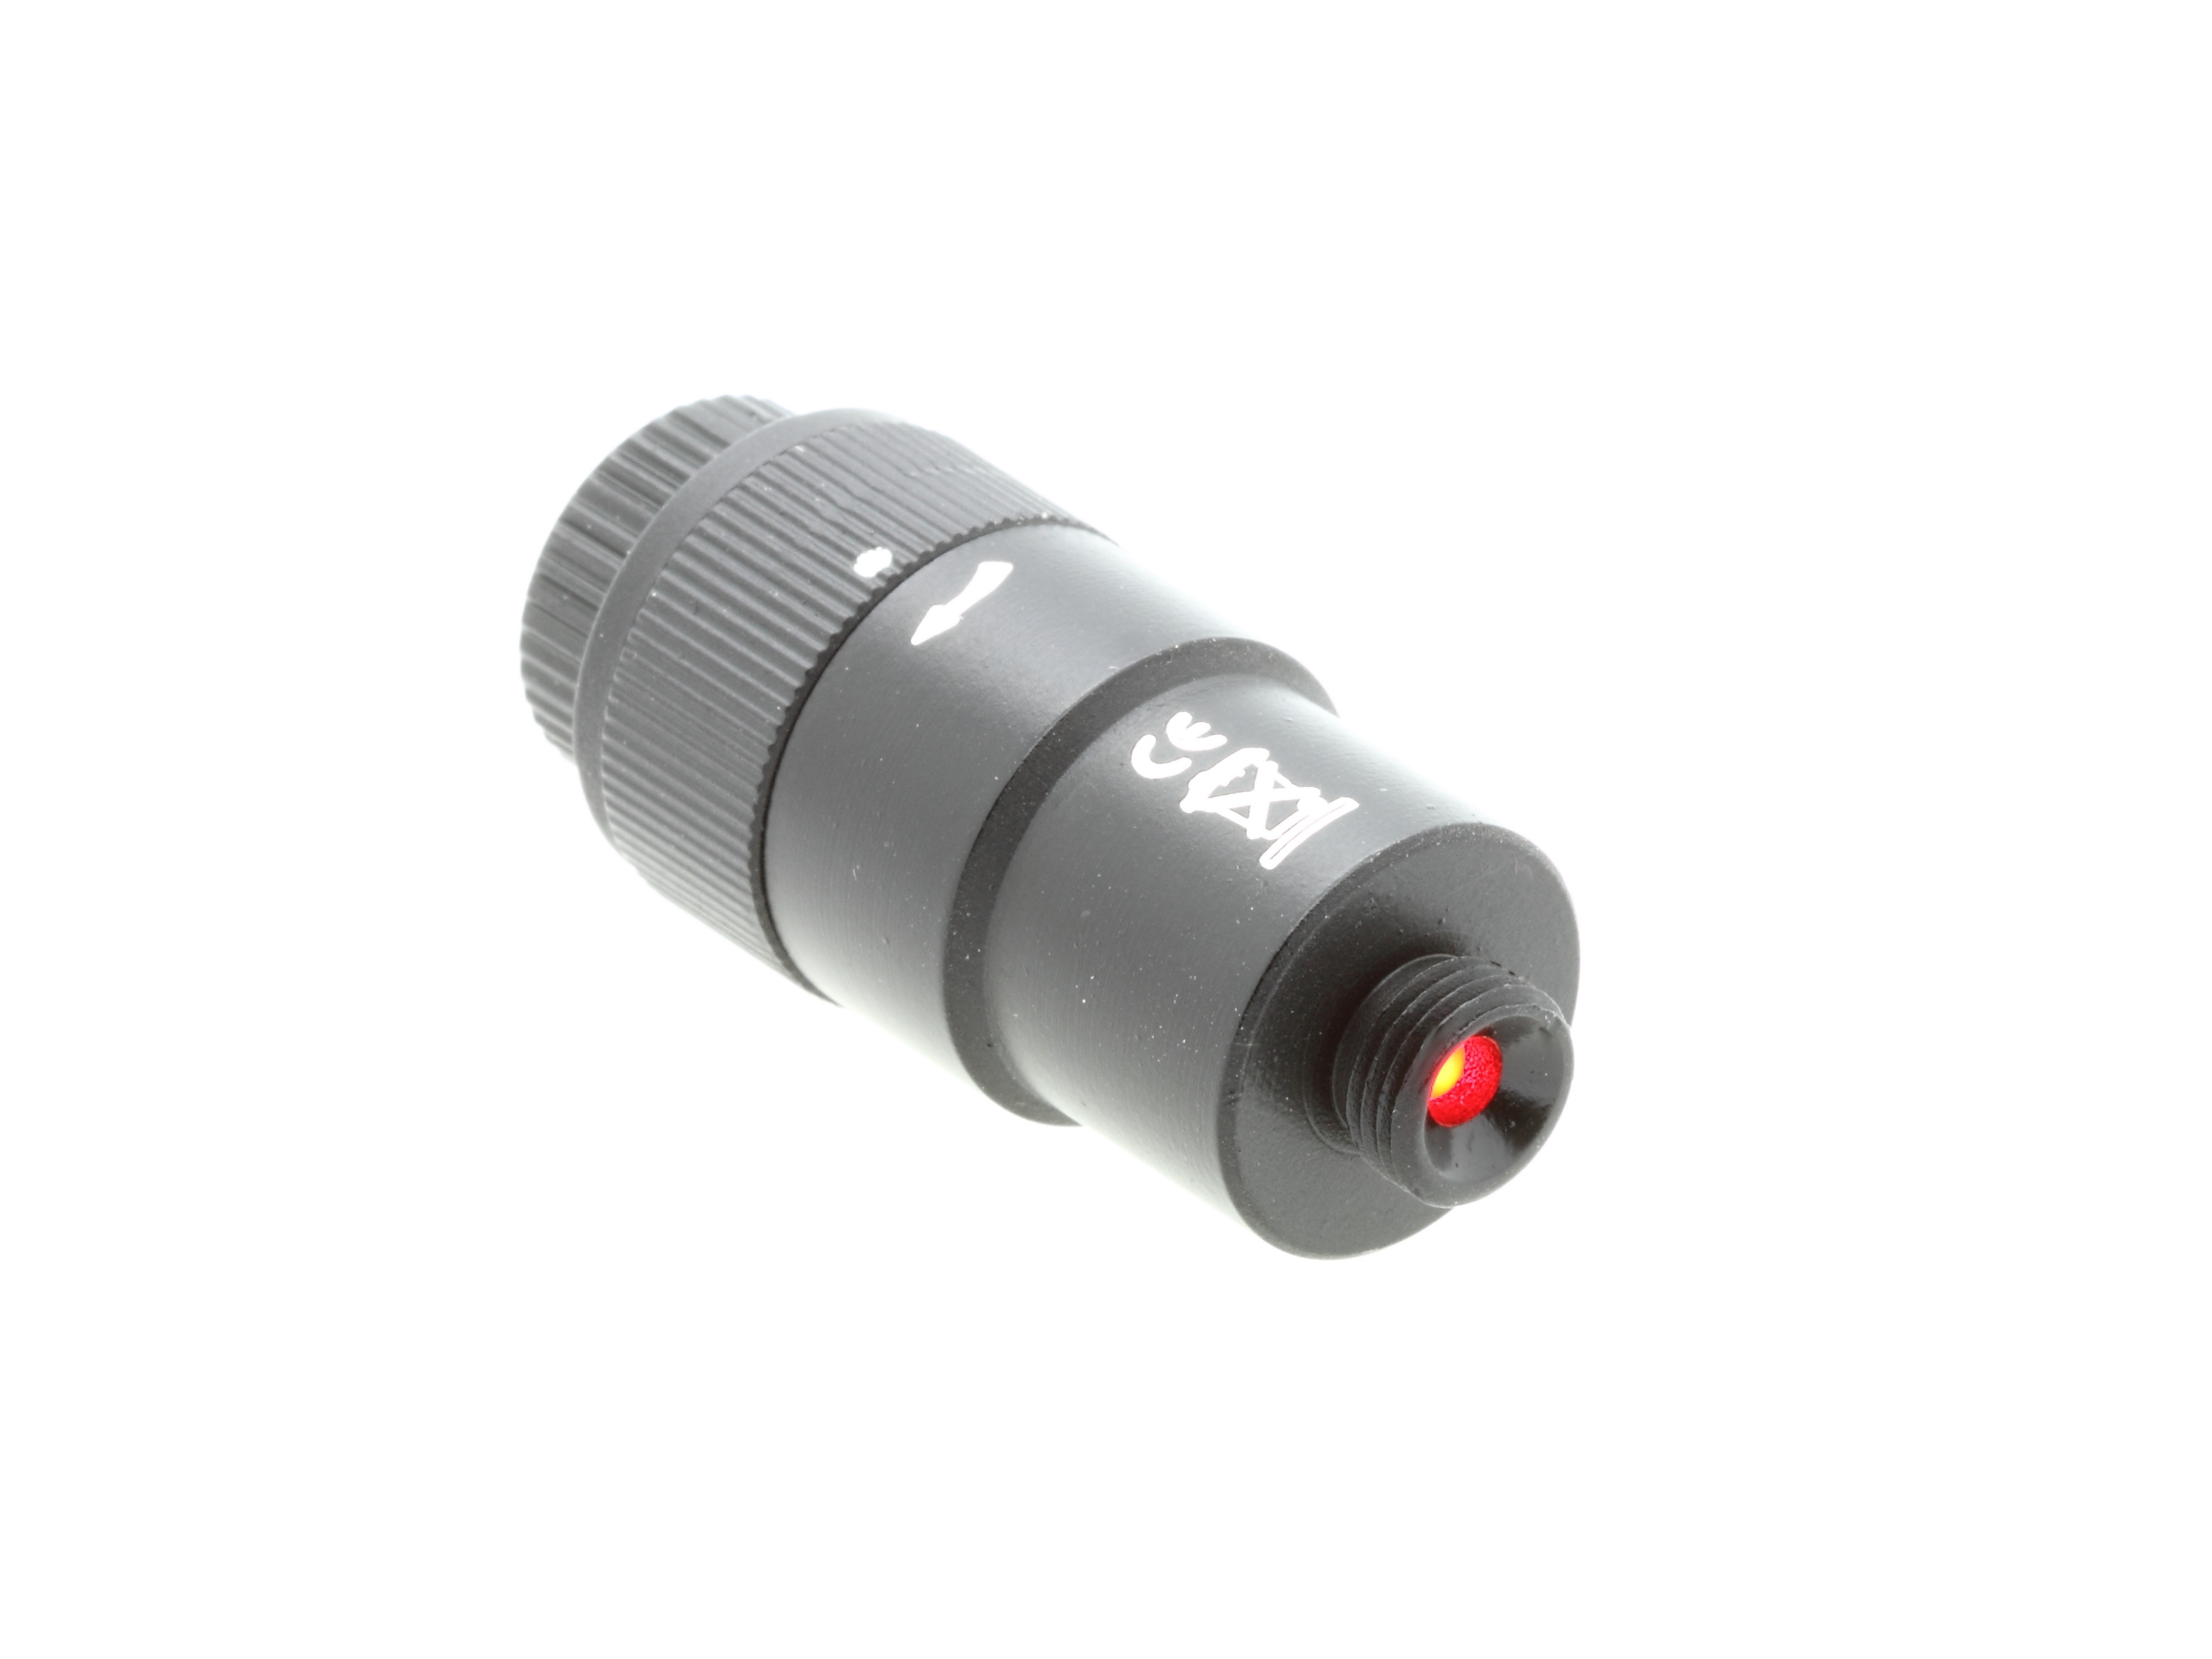 BRESSER Illuminatore per cercatori per EXOS-2 M8x0.75mm